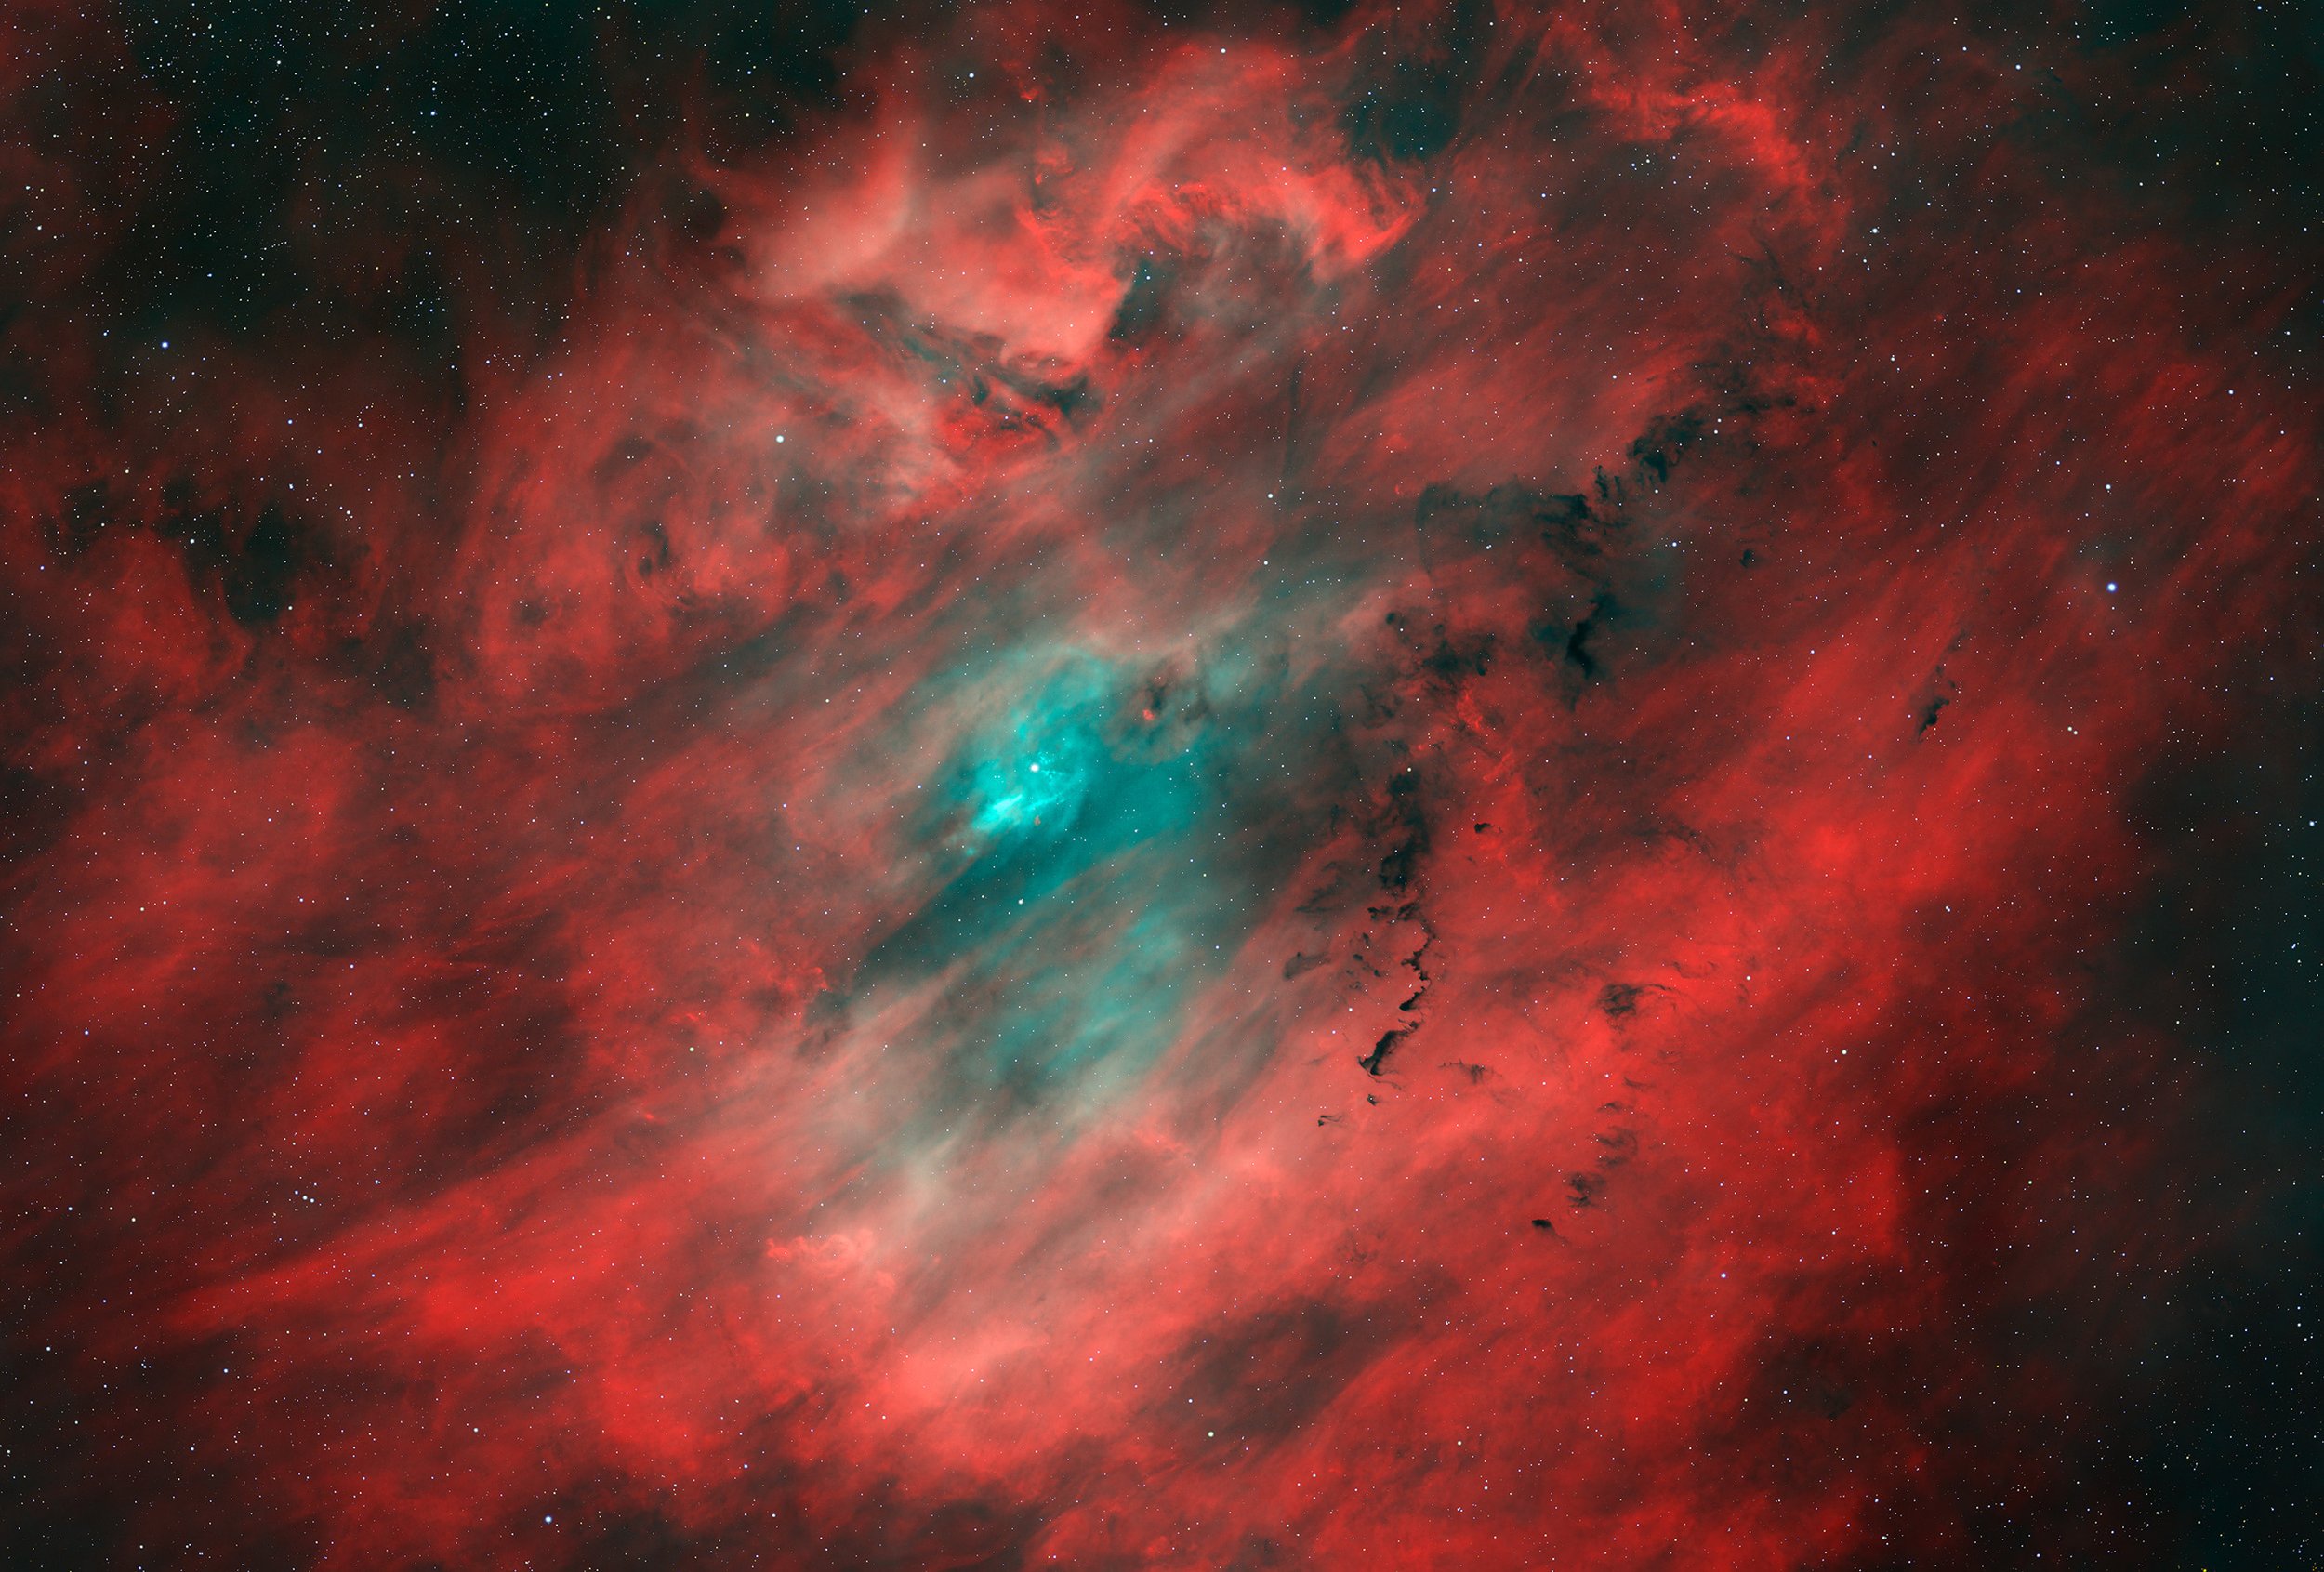 Clamshell Nebula in HOO presentation